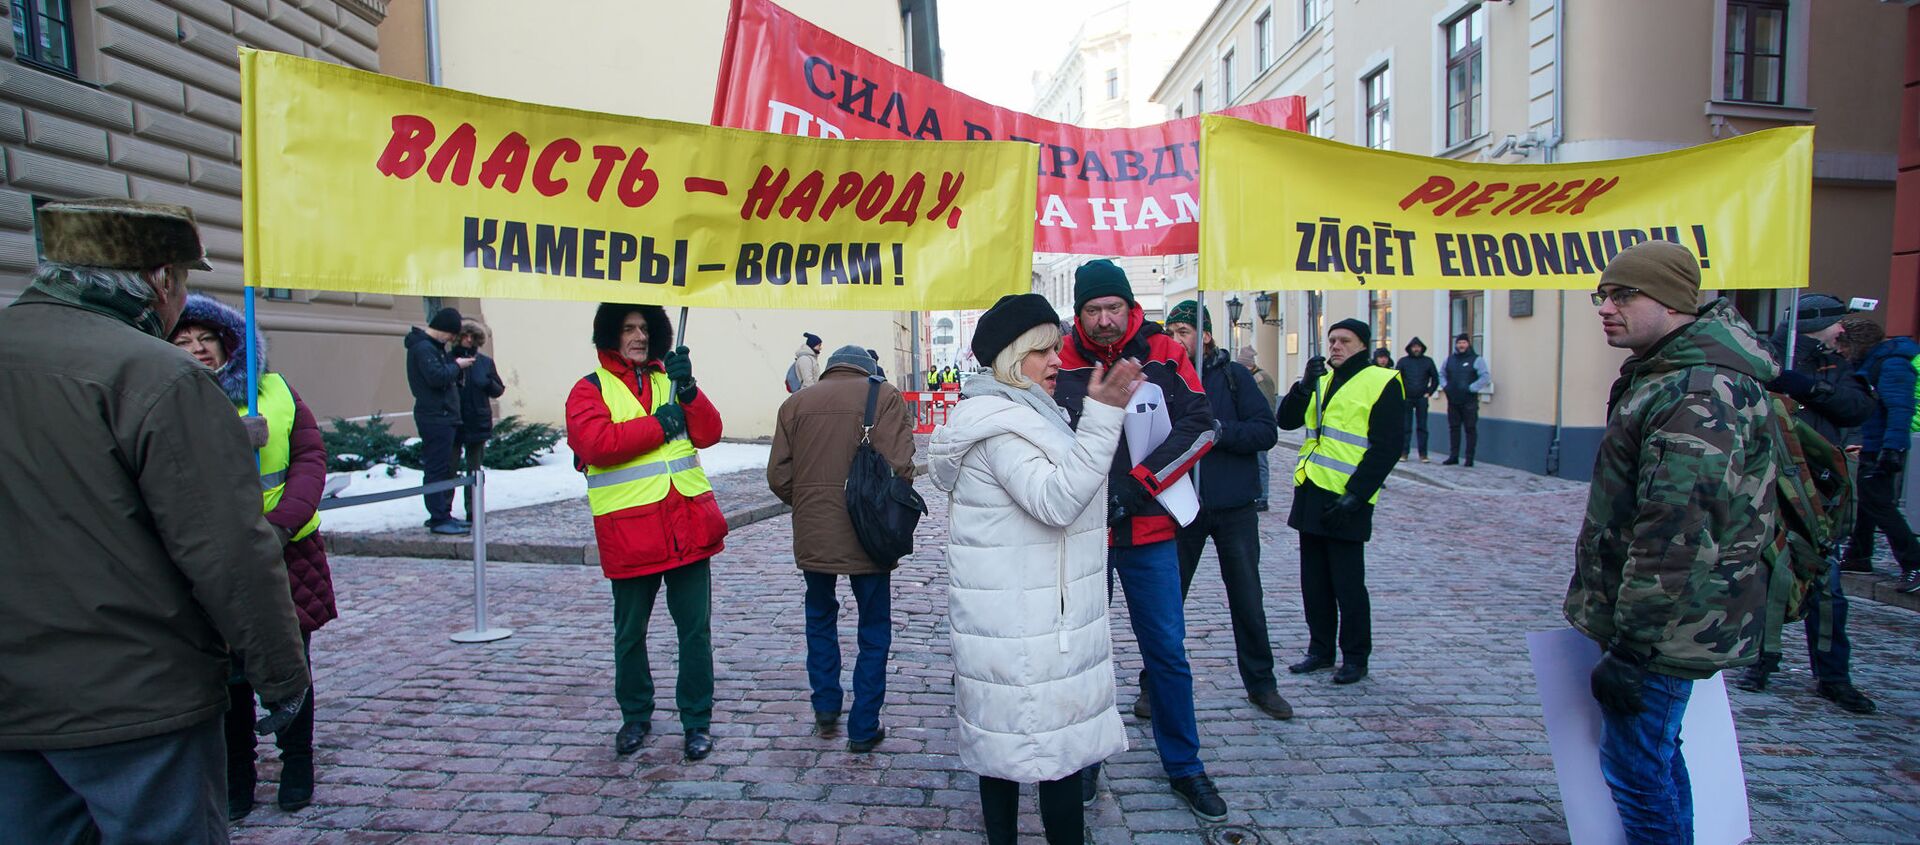 Акция протеста у здания Сейма с требованием провести внеочередные парламентские выборы - Sputnik Latvija, 1920, 11.10.2019